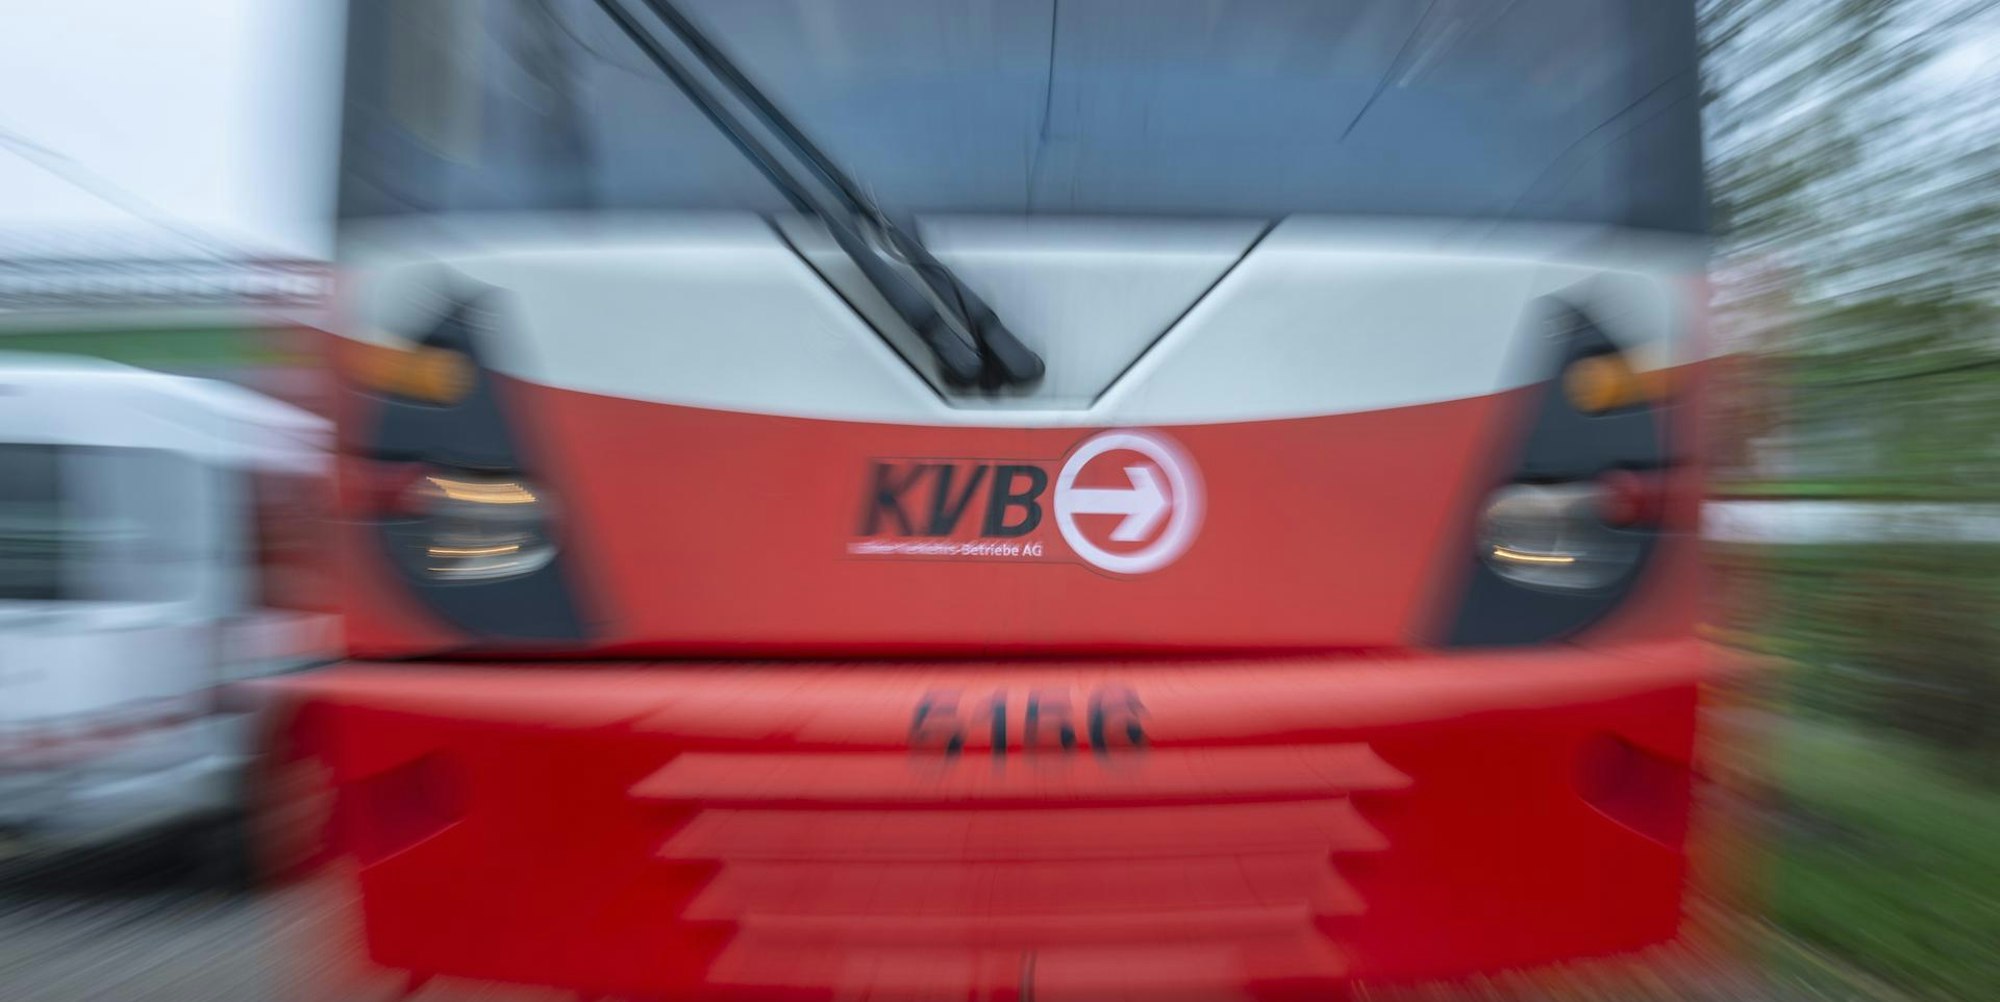 KVB Bahn